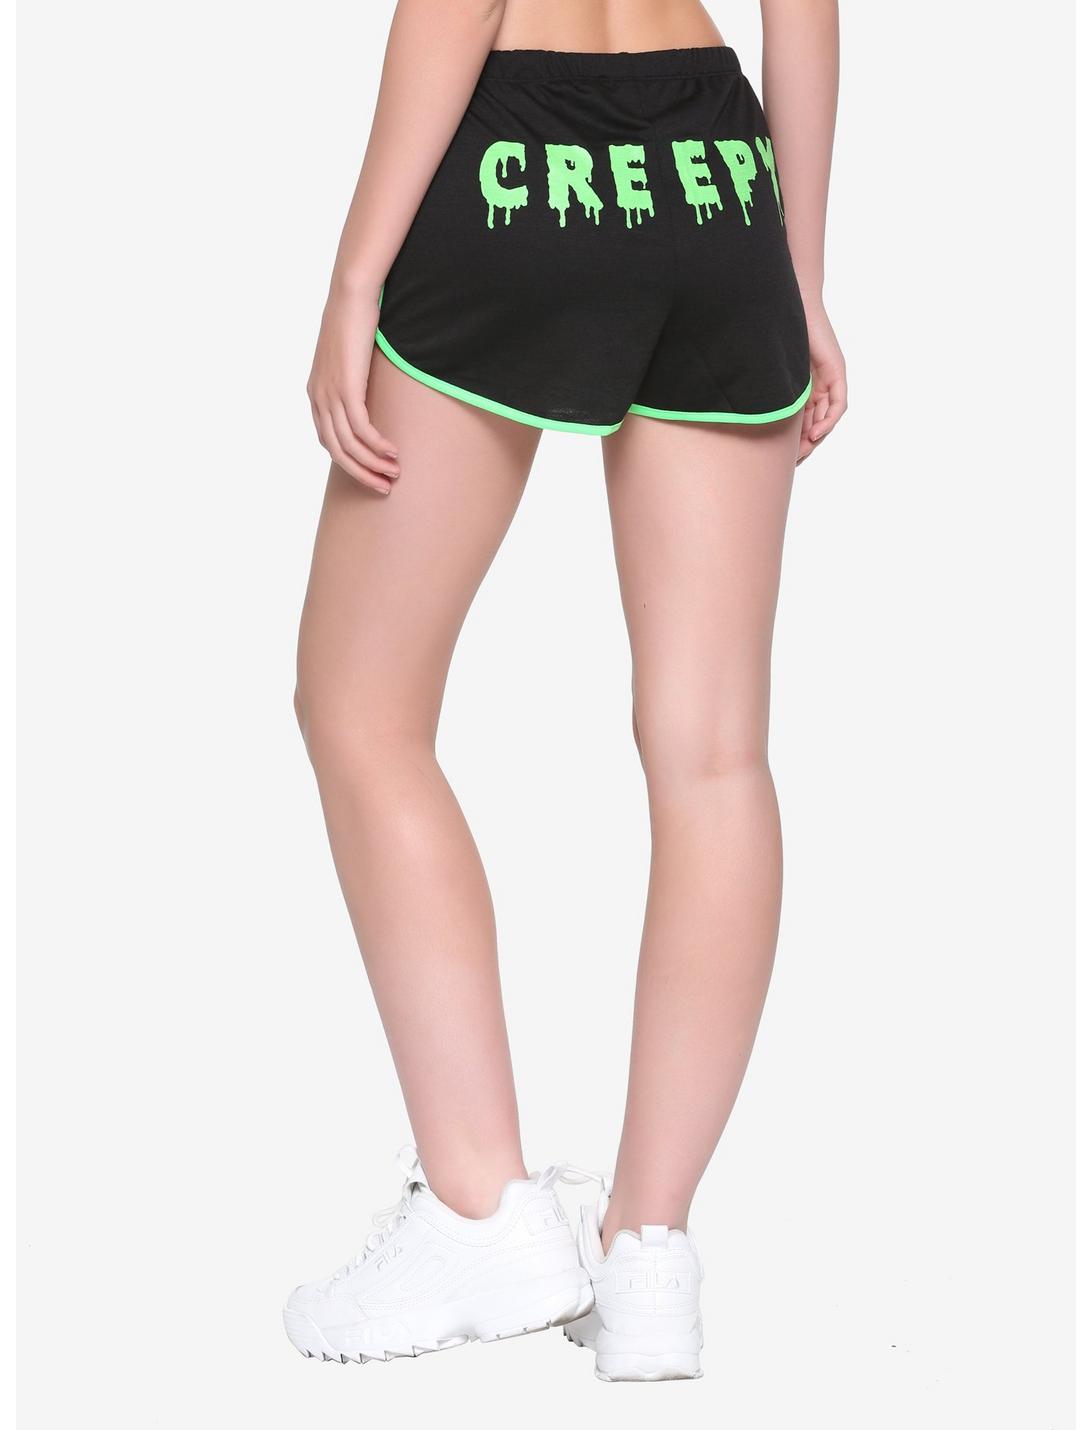 Creepy Lounge Shorts, GREEN, hi-res